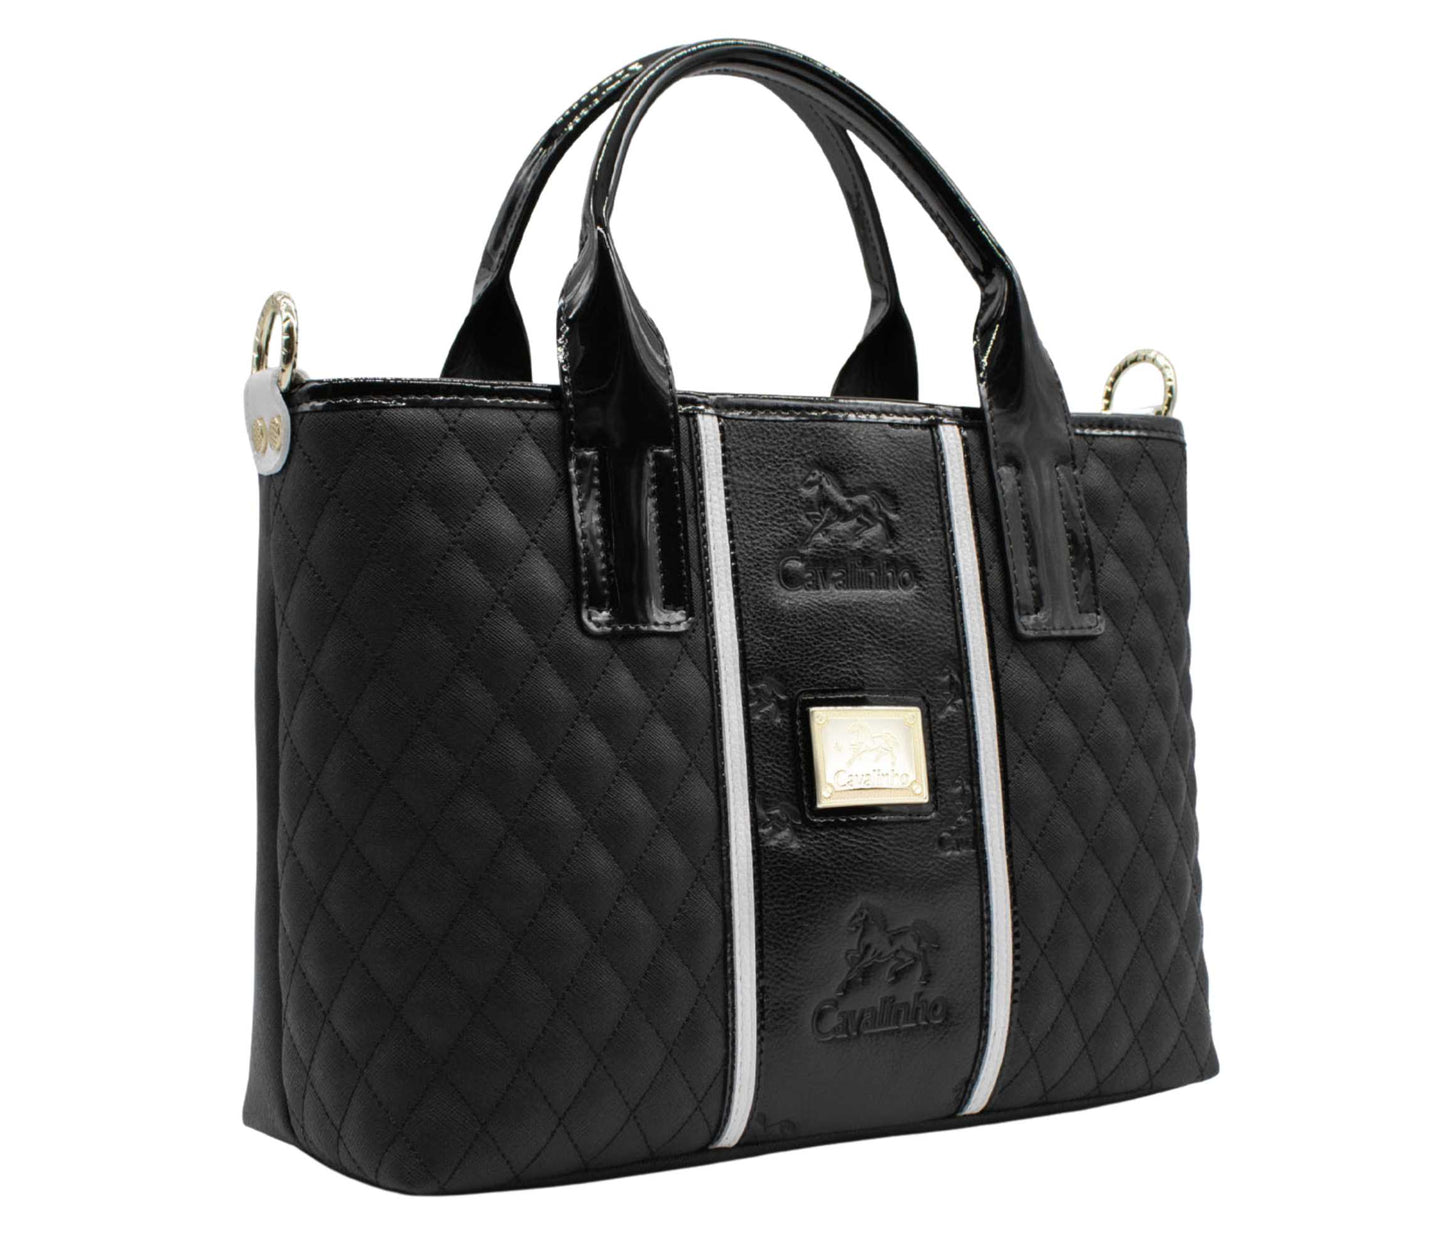 Cavalinho Royal Handbag - Black and White - 18390493.21.99_2